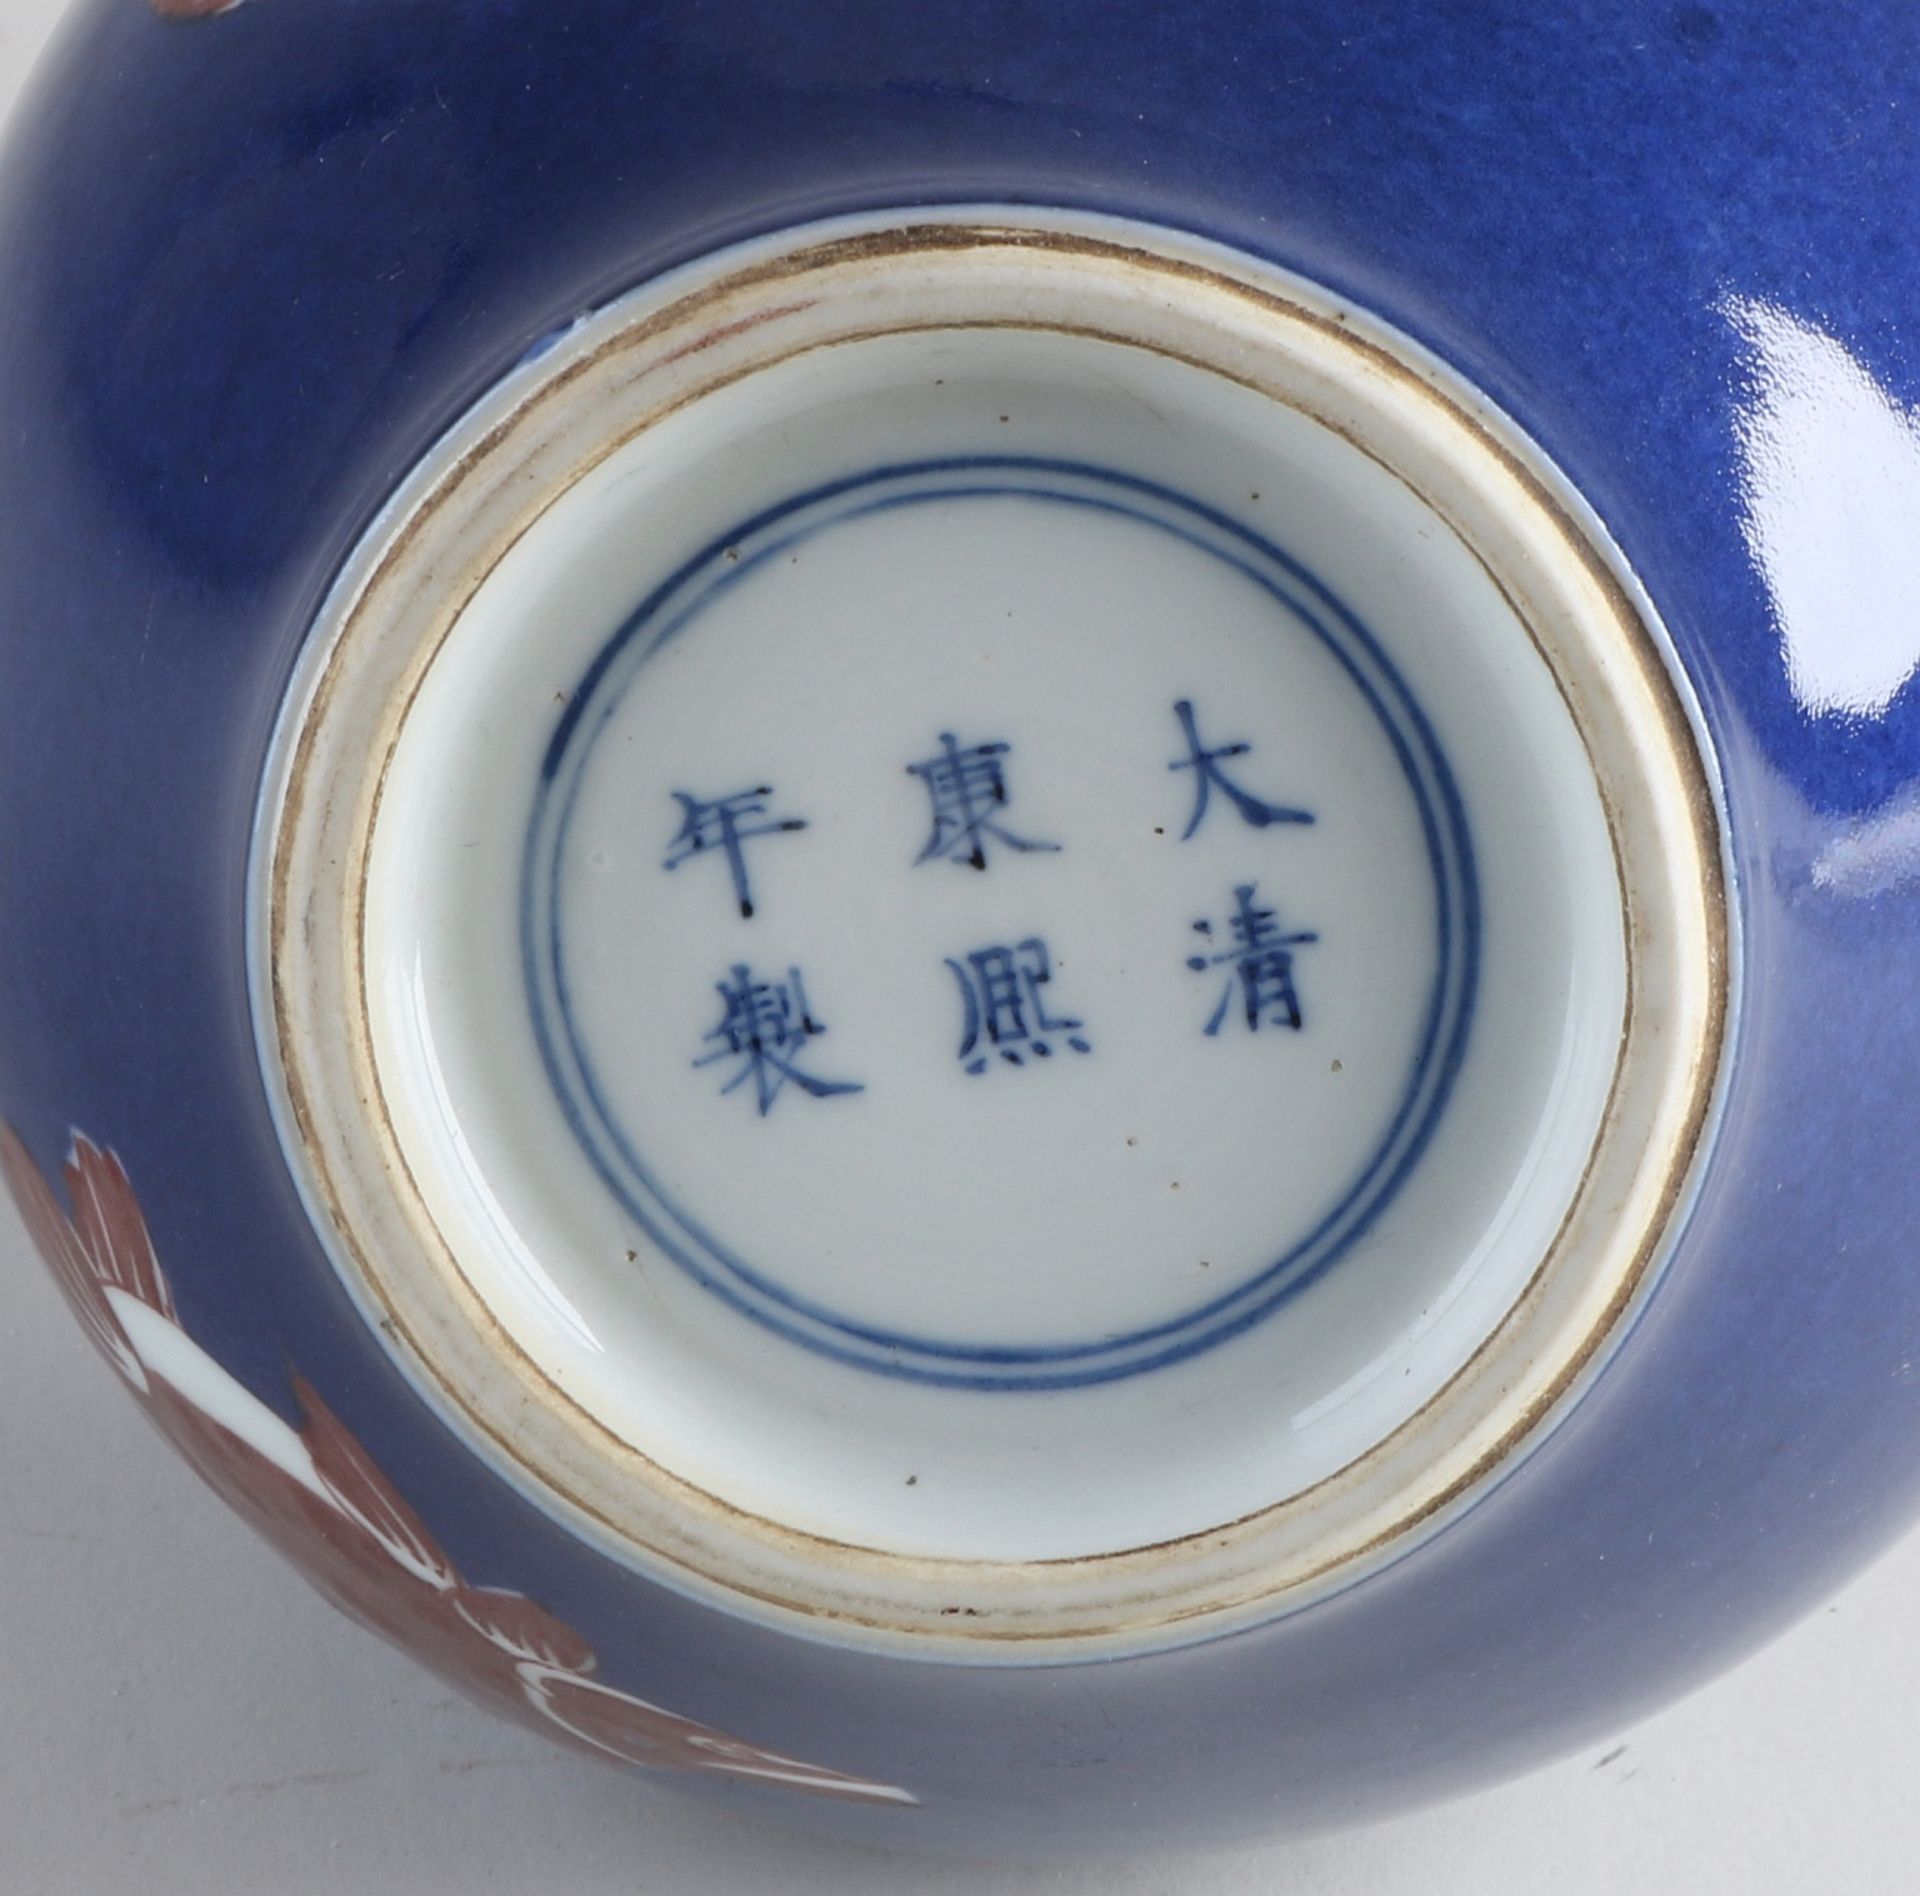 Chinese knobble vase - Image 2 of 2